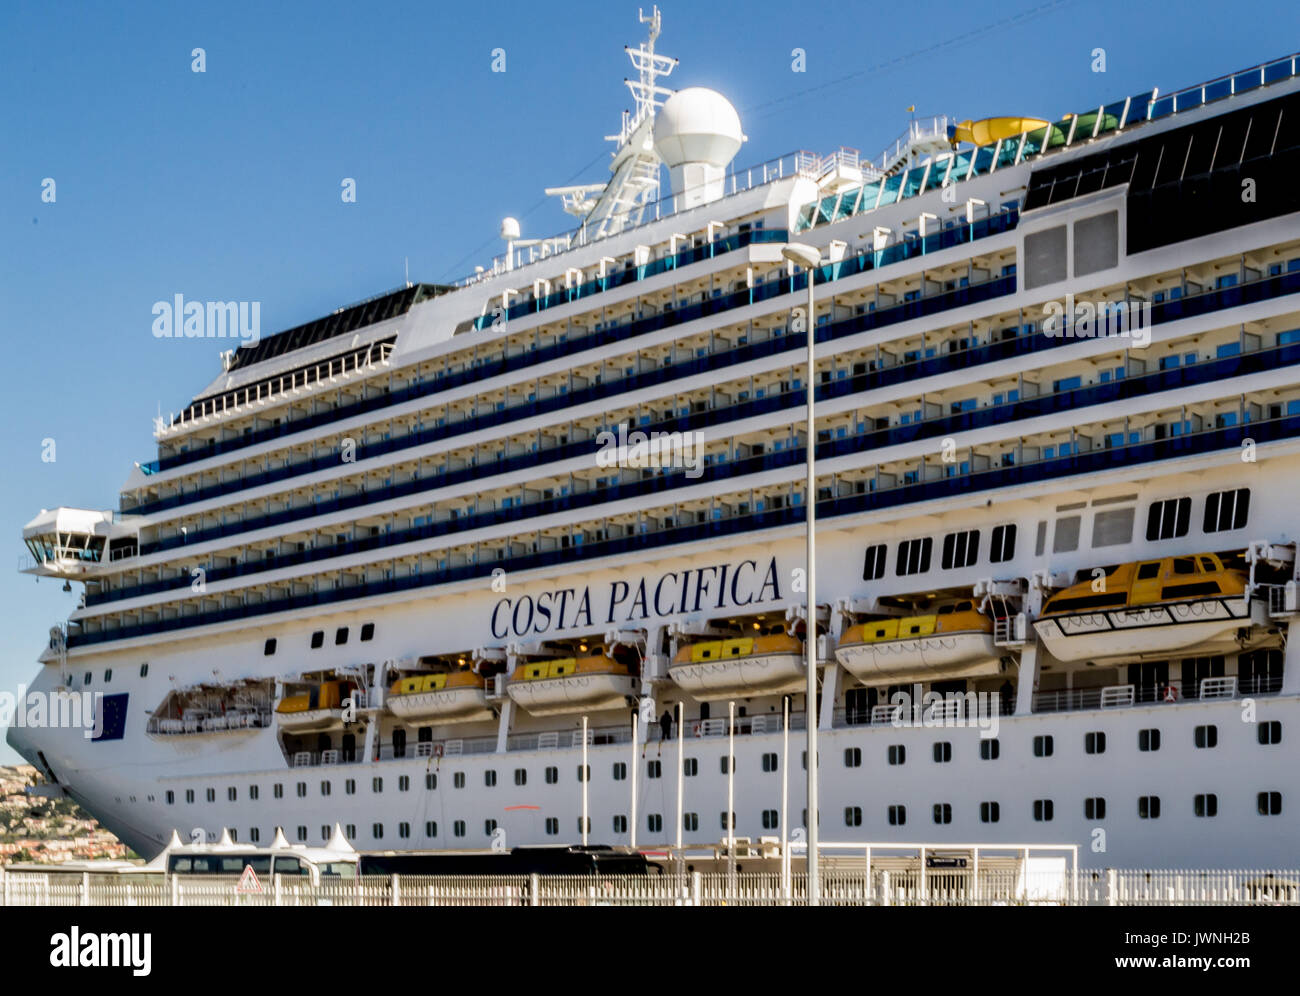 Costa cruises immagini e fotografie stock ad alta risoluzione - Alamy